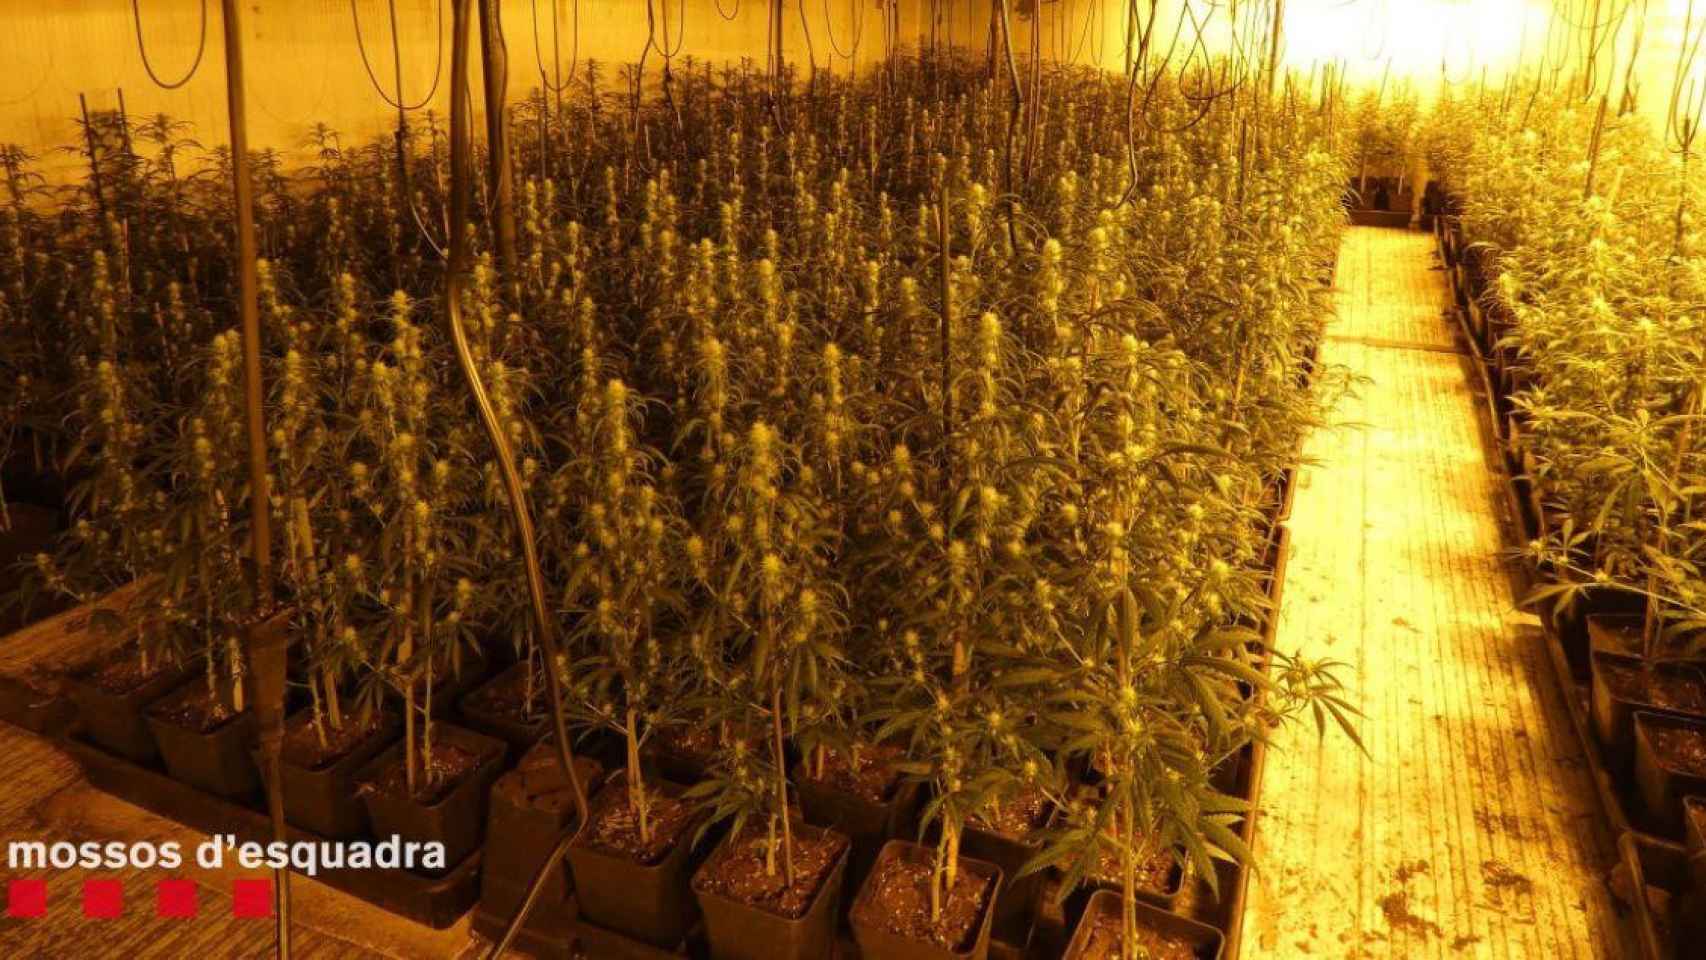 Esta es la plantación de marihuana encontrada por los Mossos en Lleida / MOSSOS